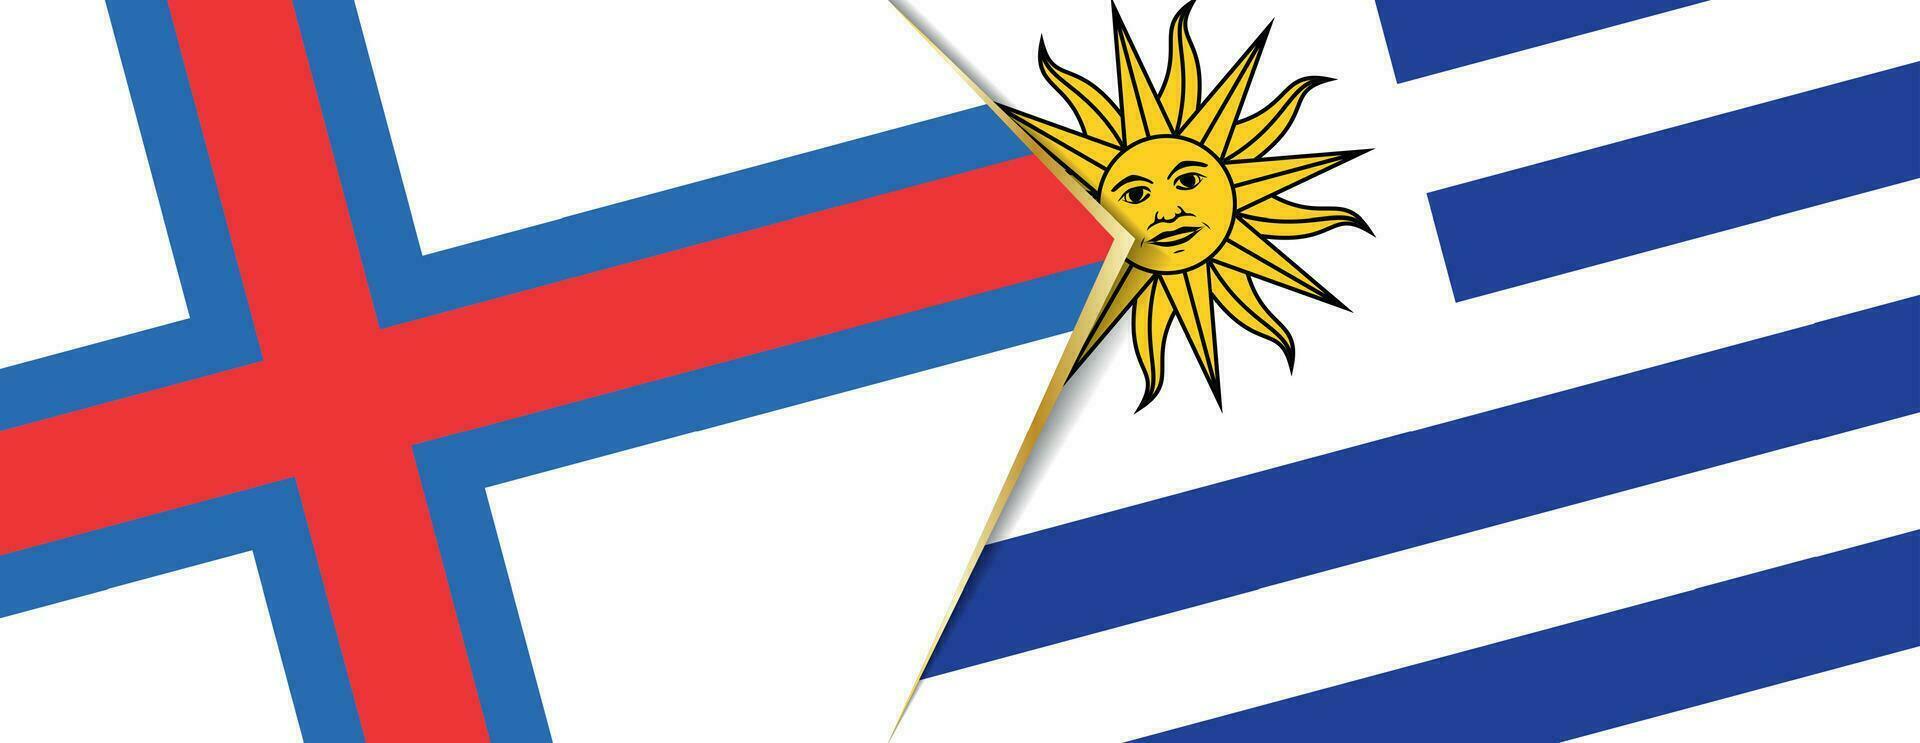 Färöer Inseln und Uruguay Flaggen, zwei Vektor Flaggen.